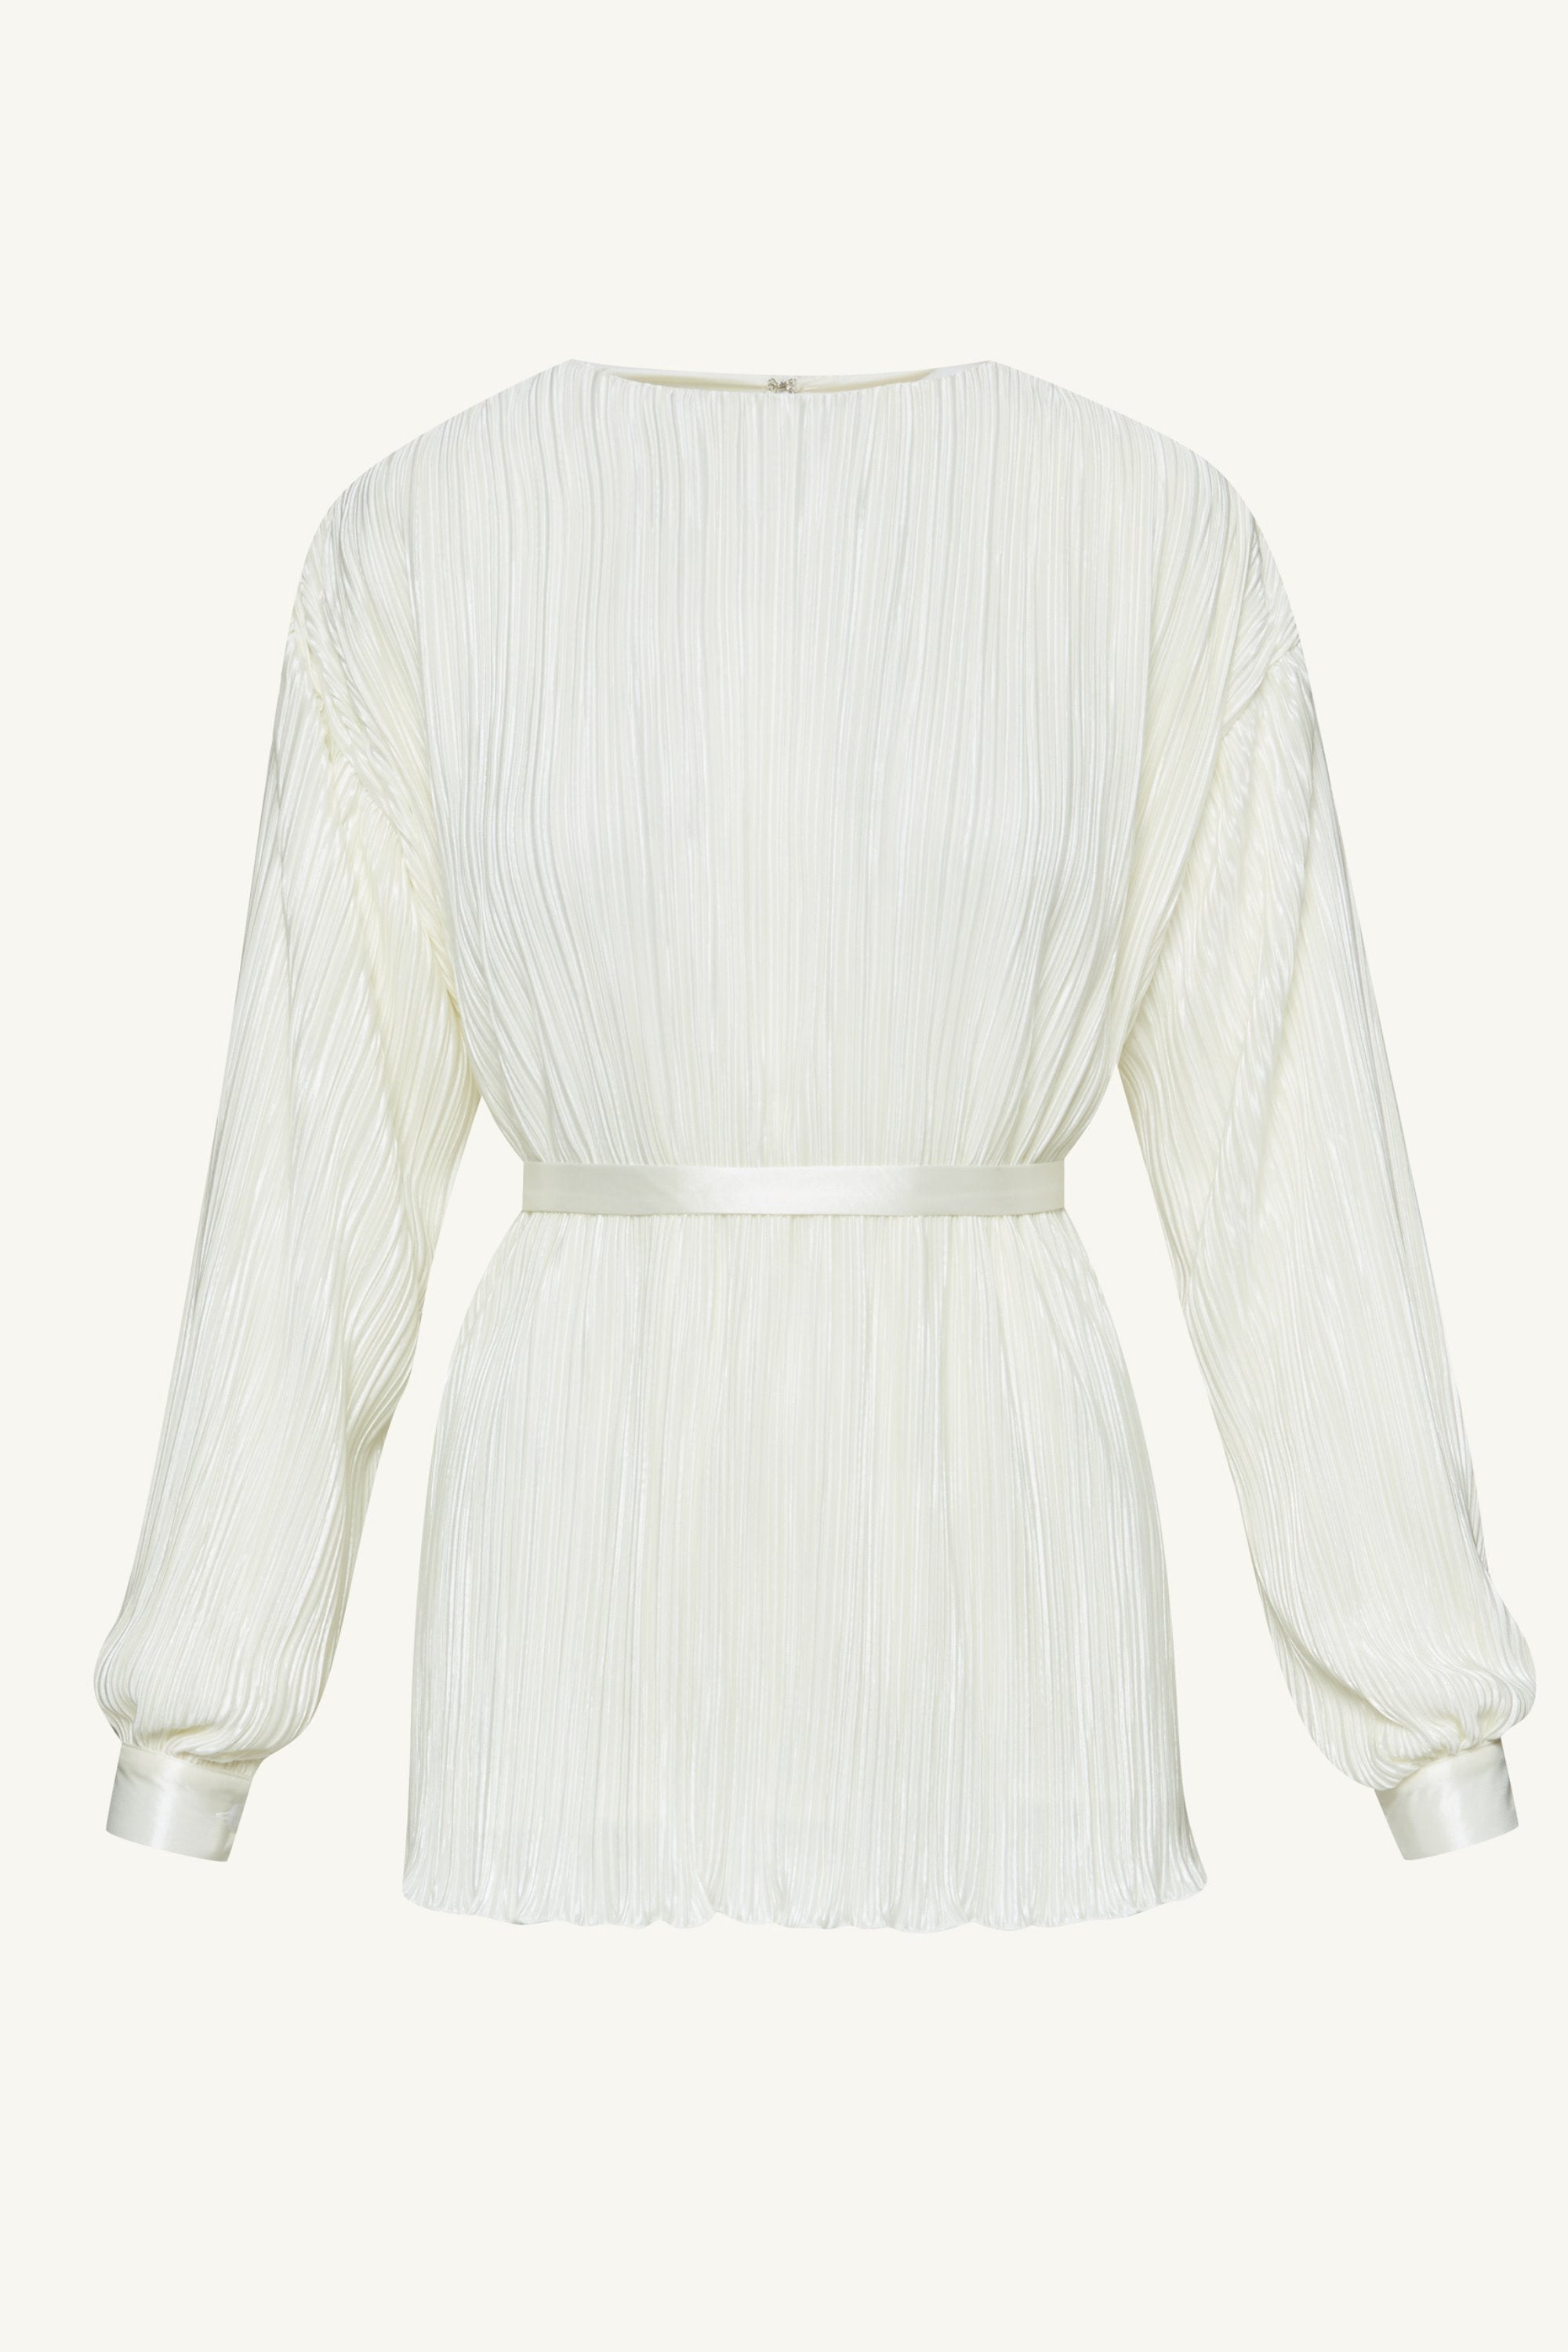 Ezra Satin Plisse Button Down Top - White Clothing Veiled 